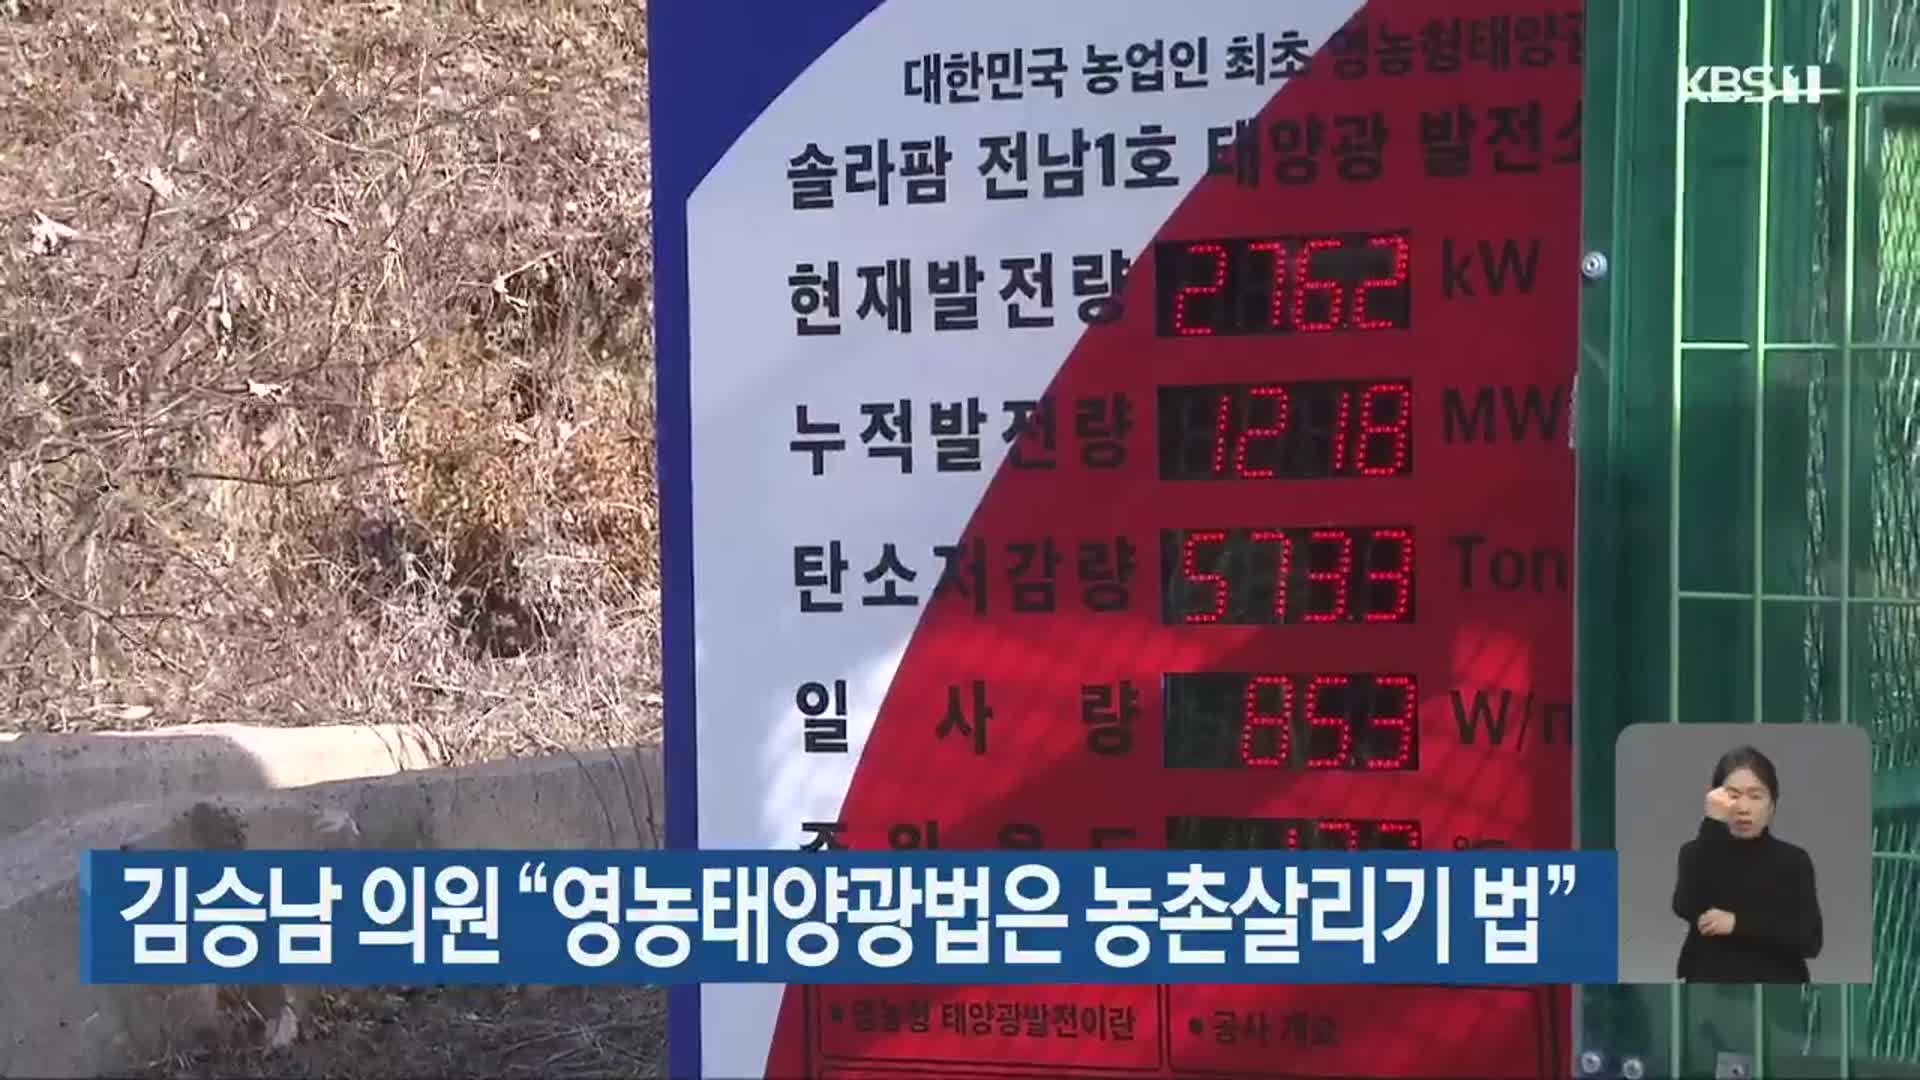 김승남 의원 “영농태양광법은 농촌살리기 법”